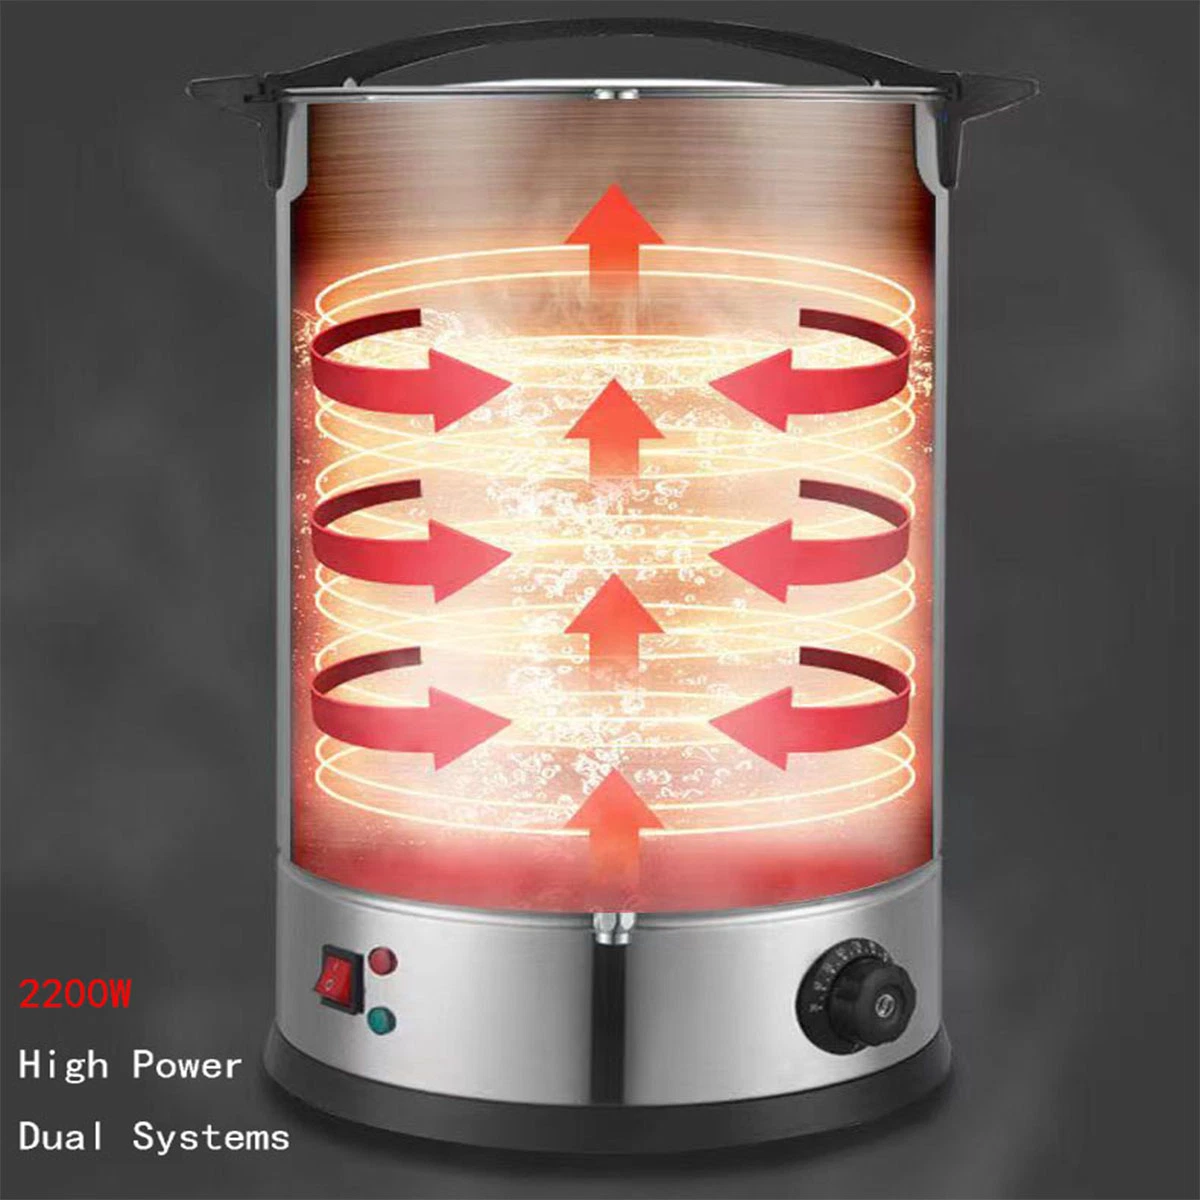 Accueil de haute qualité ménage meilleur acier inoxydable percolateur Maker Machine à café électrique appareil de cuisine